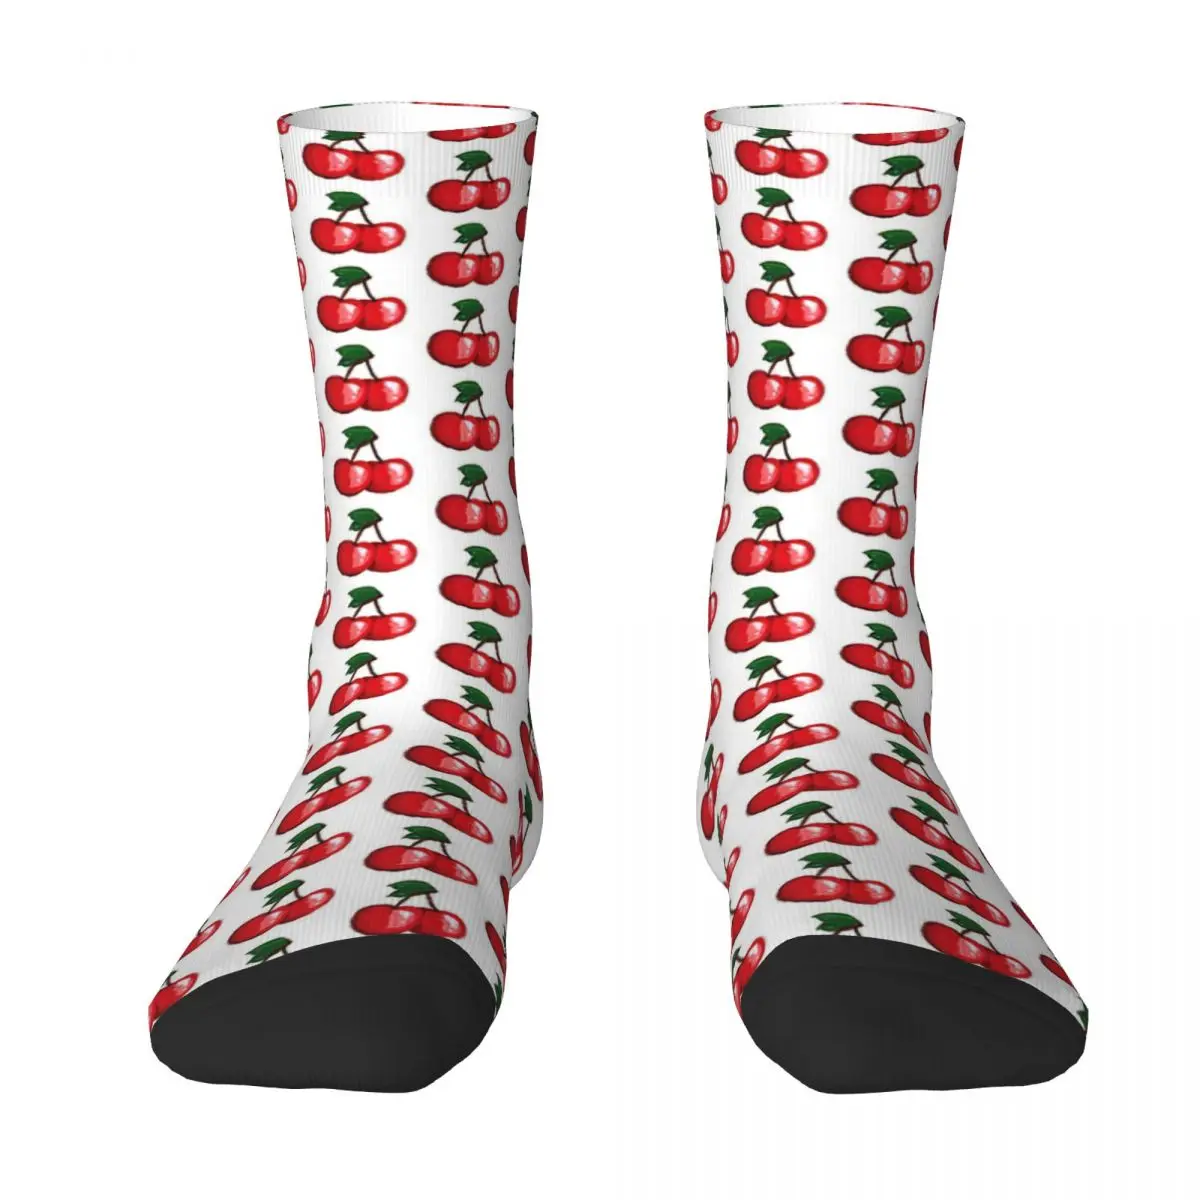 Two Cherries Adult Socks,Unisex socks,men Socks women Socks